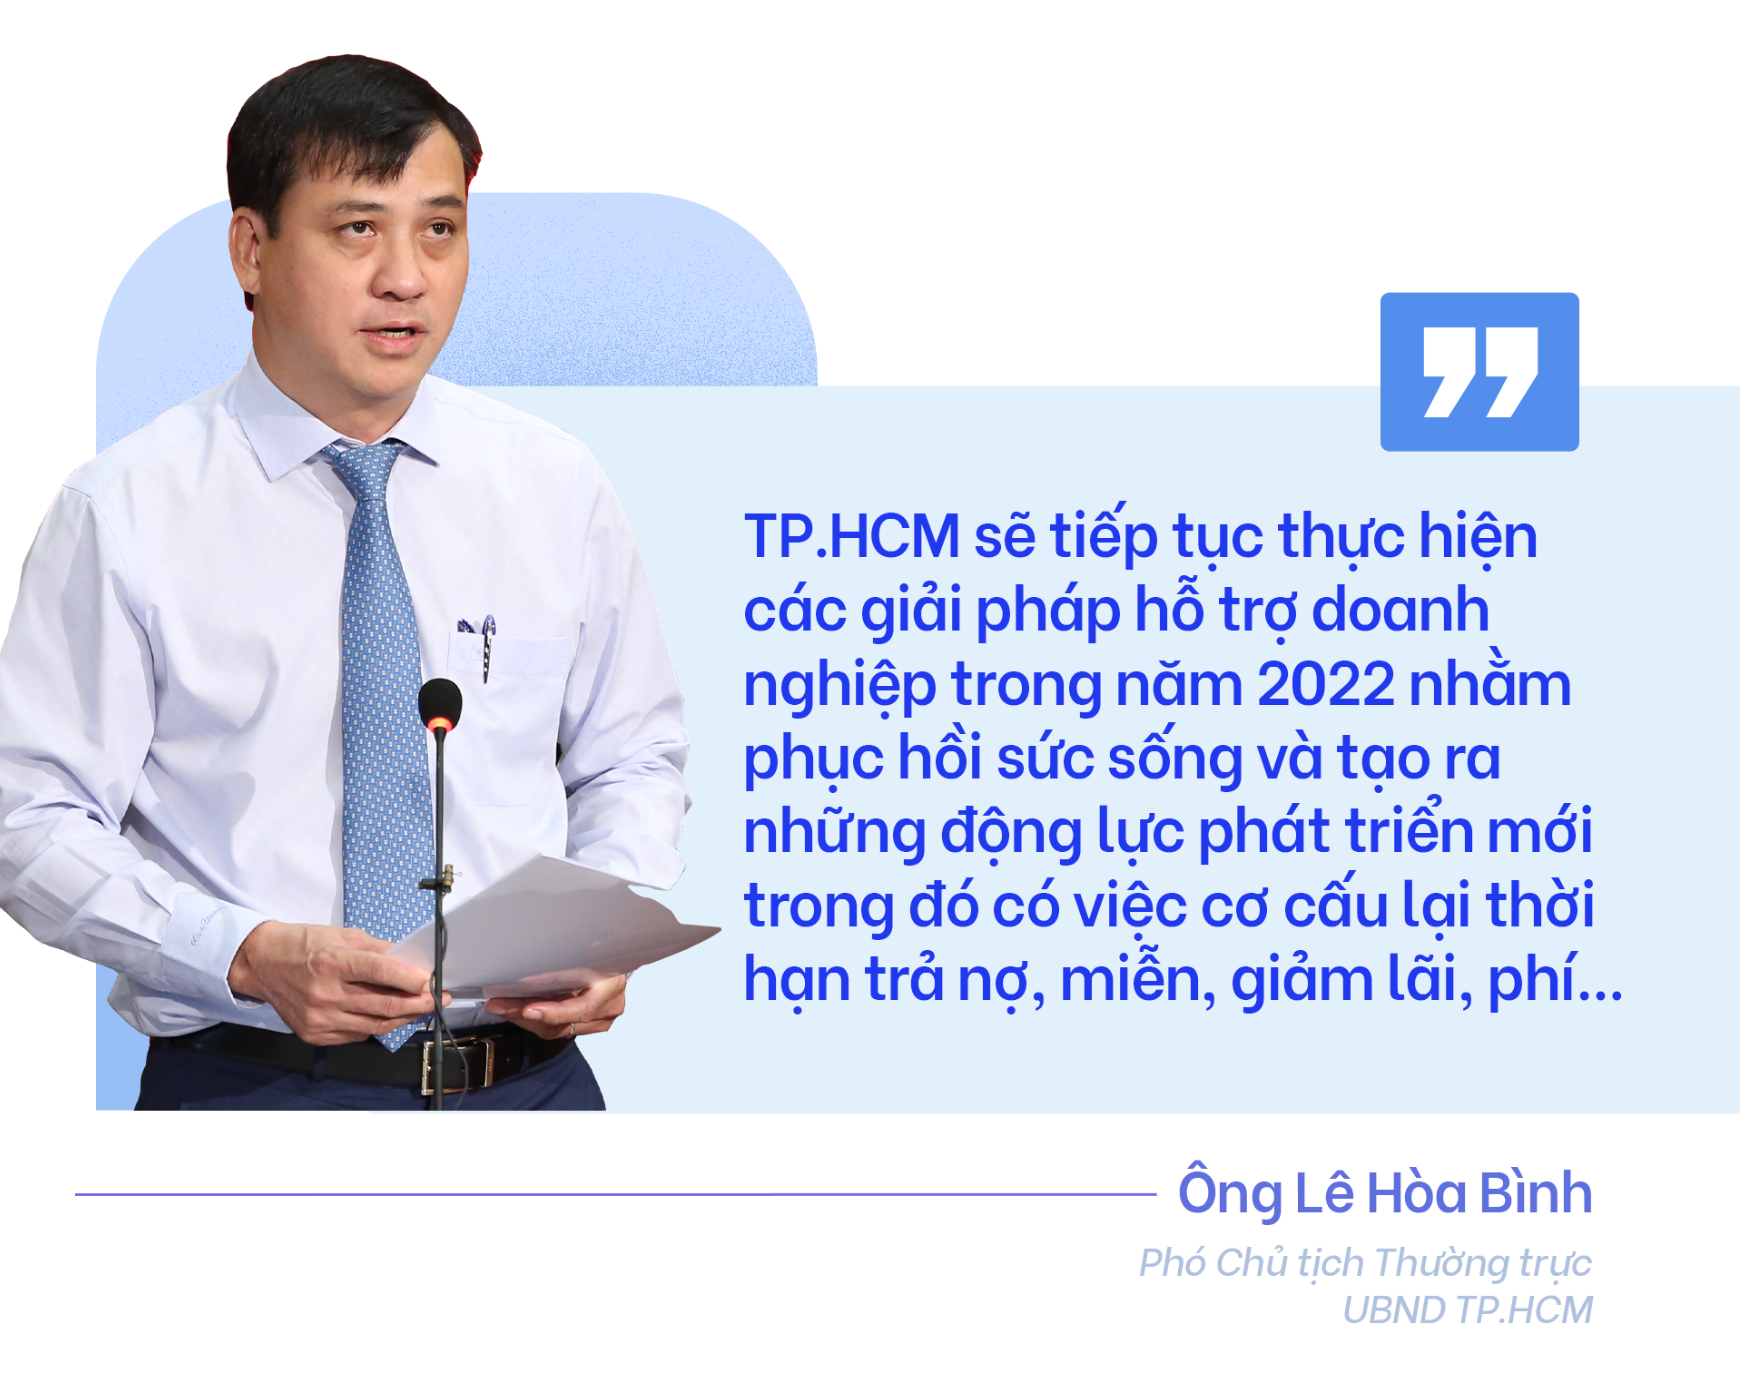 TP.HCM - Sức bật từ khát vọng phục hồi 2022 - ảnh 18